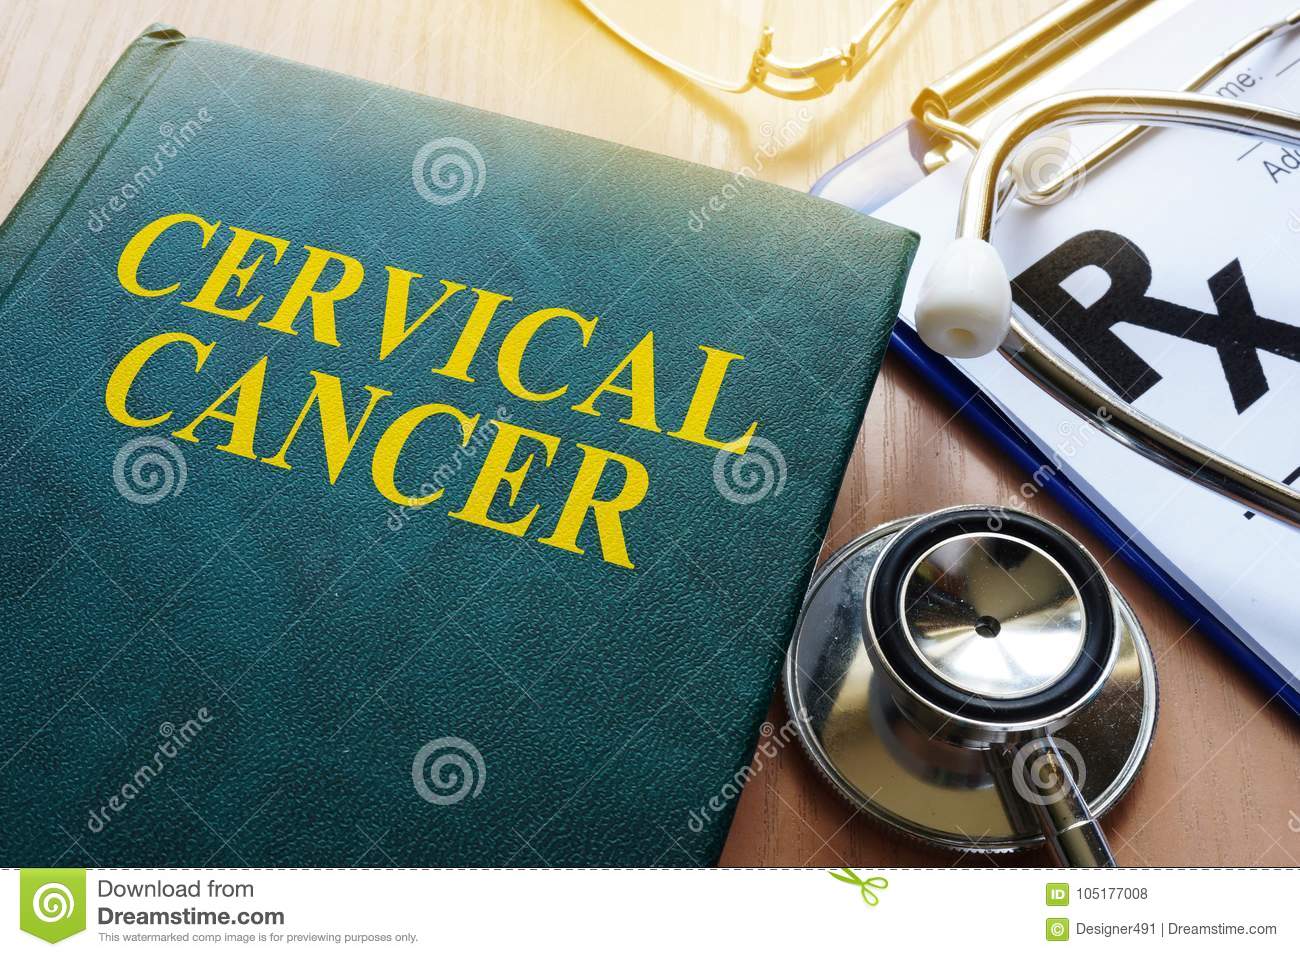 book-cervical-cancer-desk-hospital-105177008.jpg